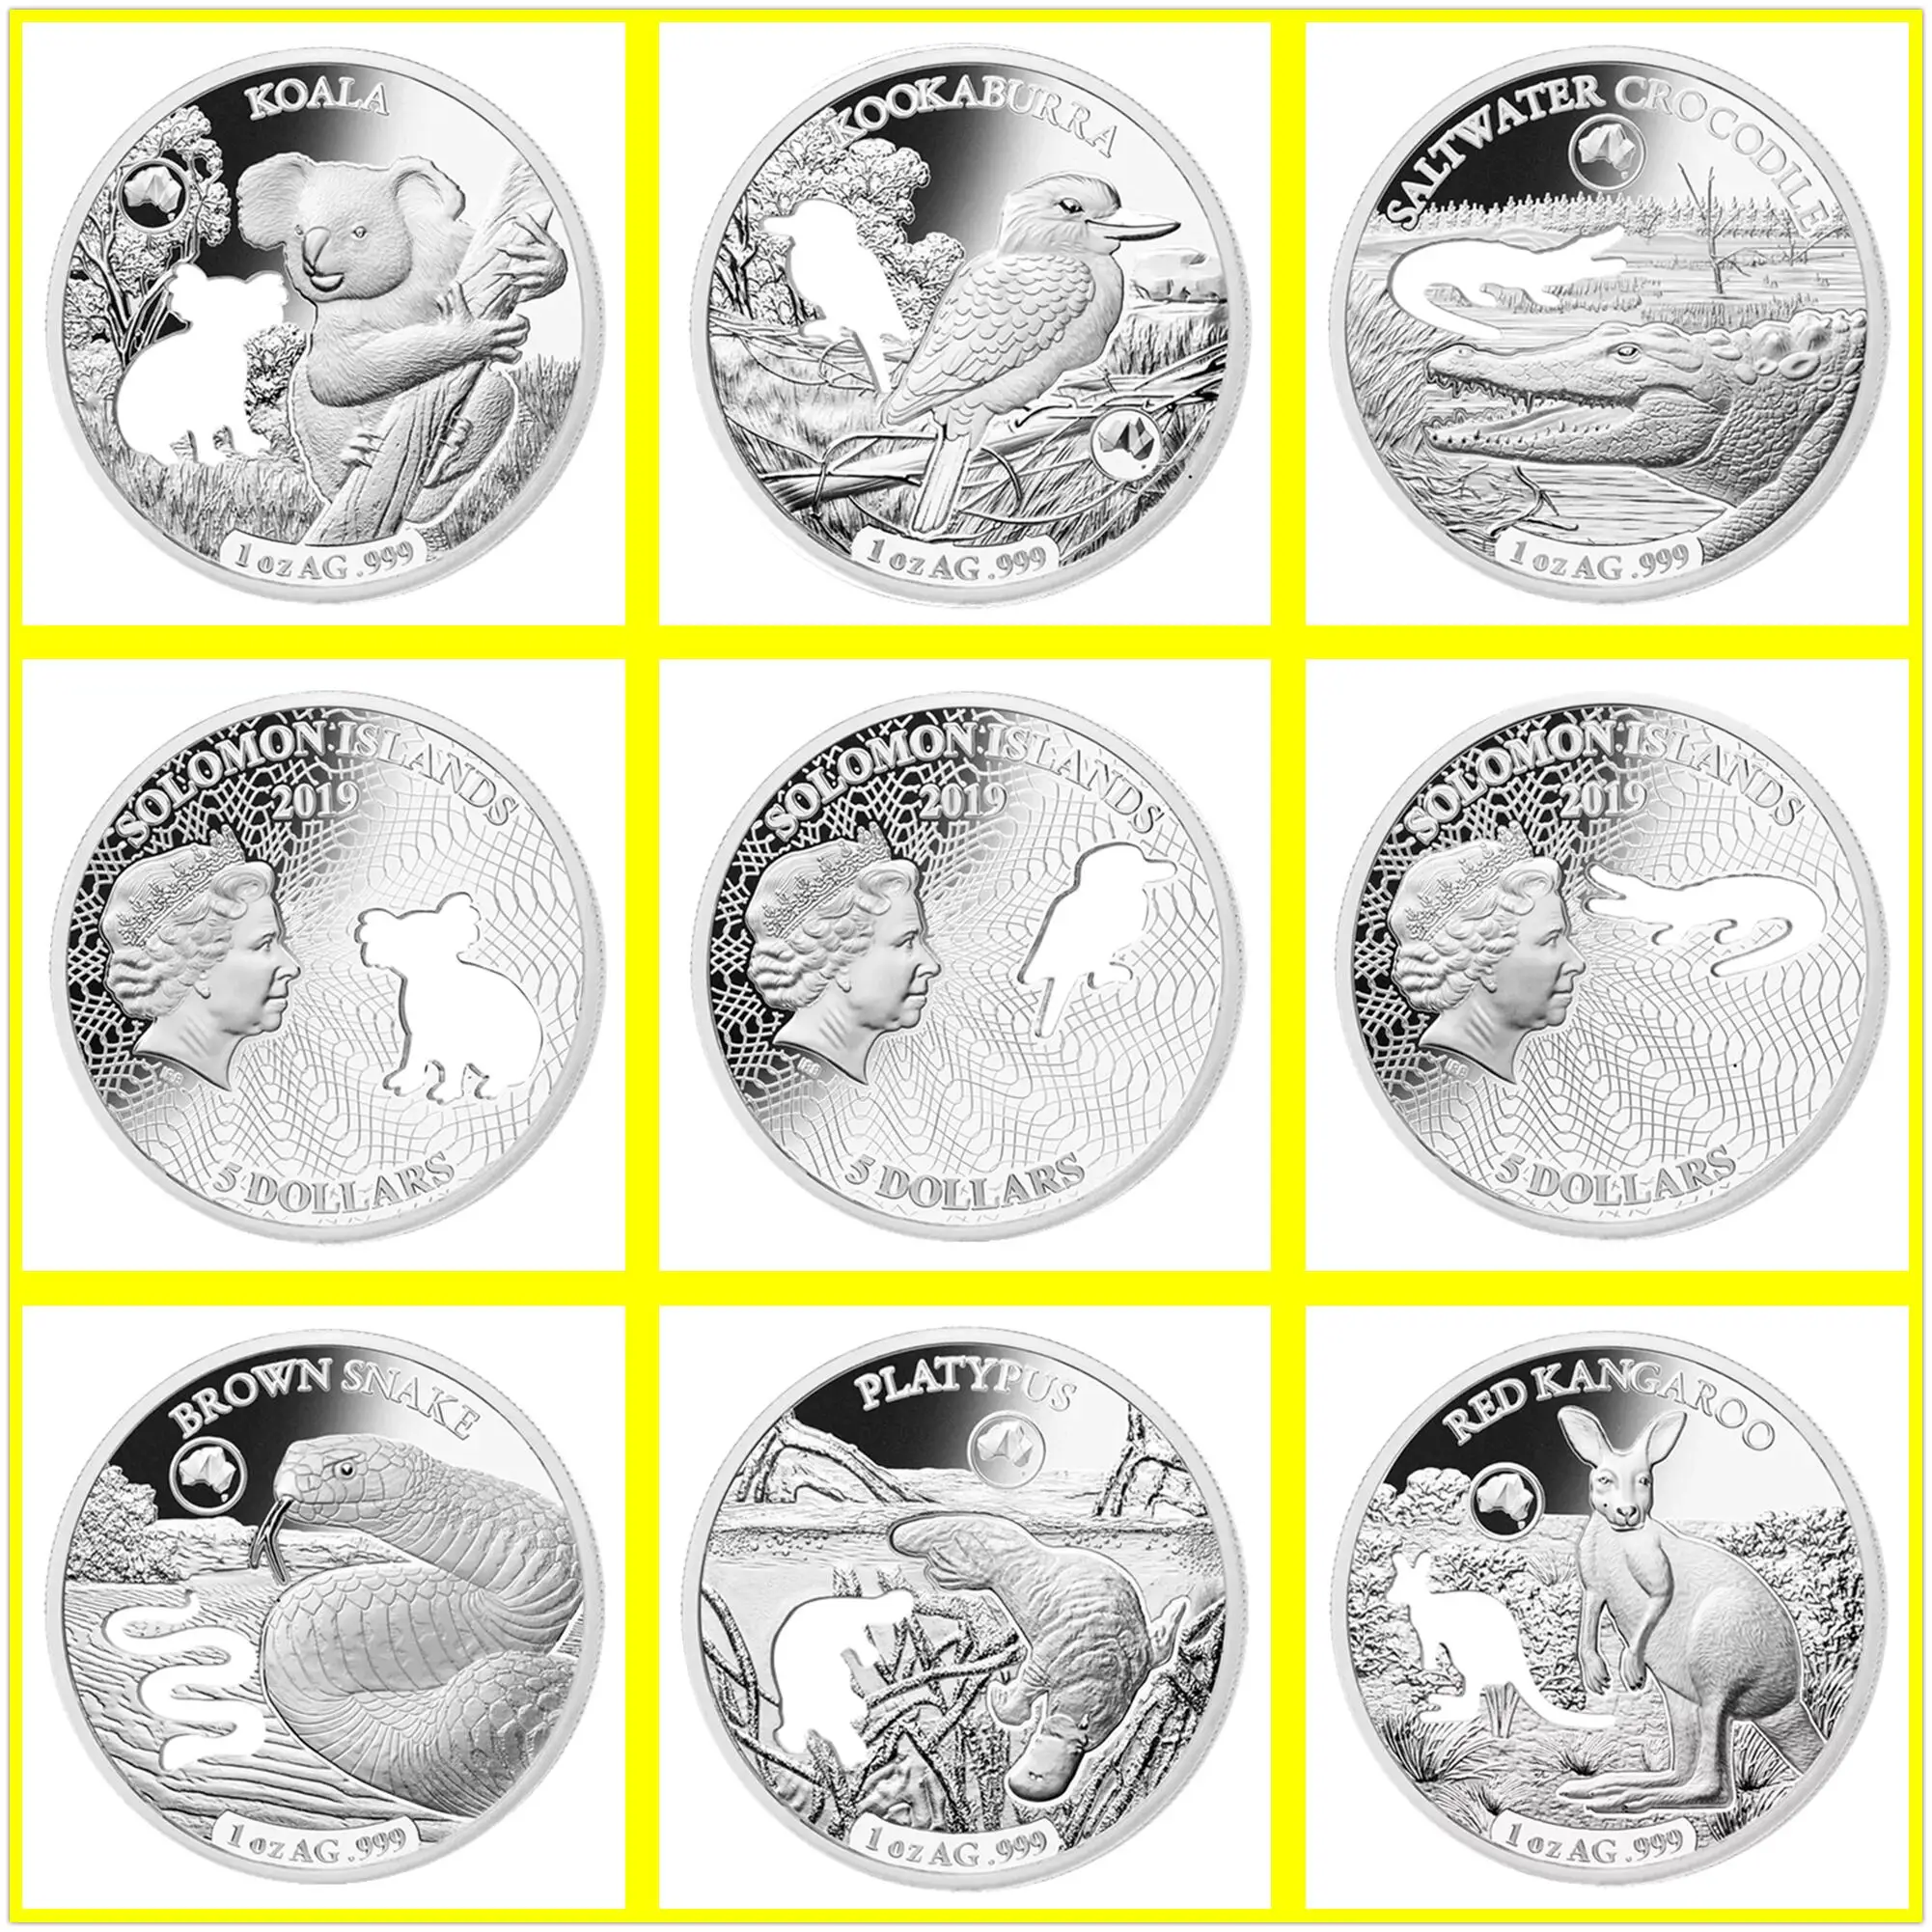 

6pcs/lot 2019 Australia Coins 1oz Silver Coin Crocodile + koala +Snake+ kookaburra Challenge Coins Gift